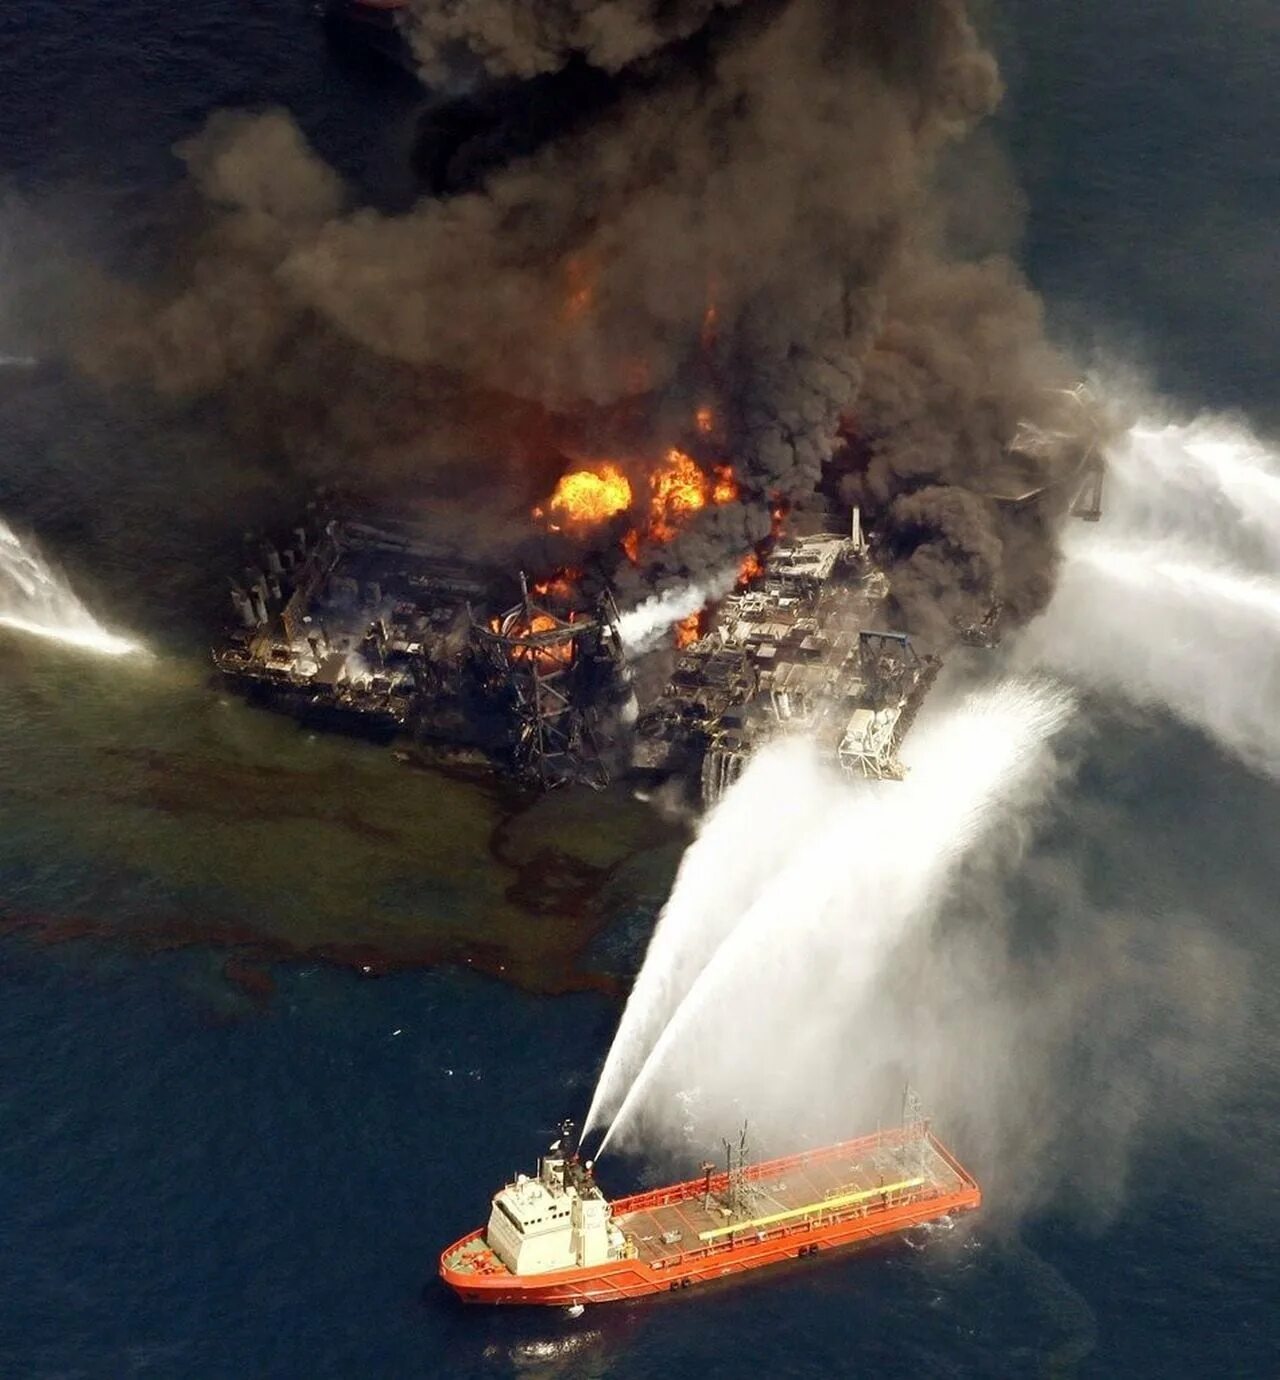 Взрыв нефтяной платформы Deepwater Horizon - 20 апреля 2010 года. Взрыв нефтяной платформы Deepwater Horizon в мексиканском заливе 2010. Катастрофа в мексиканском заливе в 2010 году. Взрыв на нефтяной платформе в мексиканском заливе 2010. 14 апреля 2010